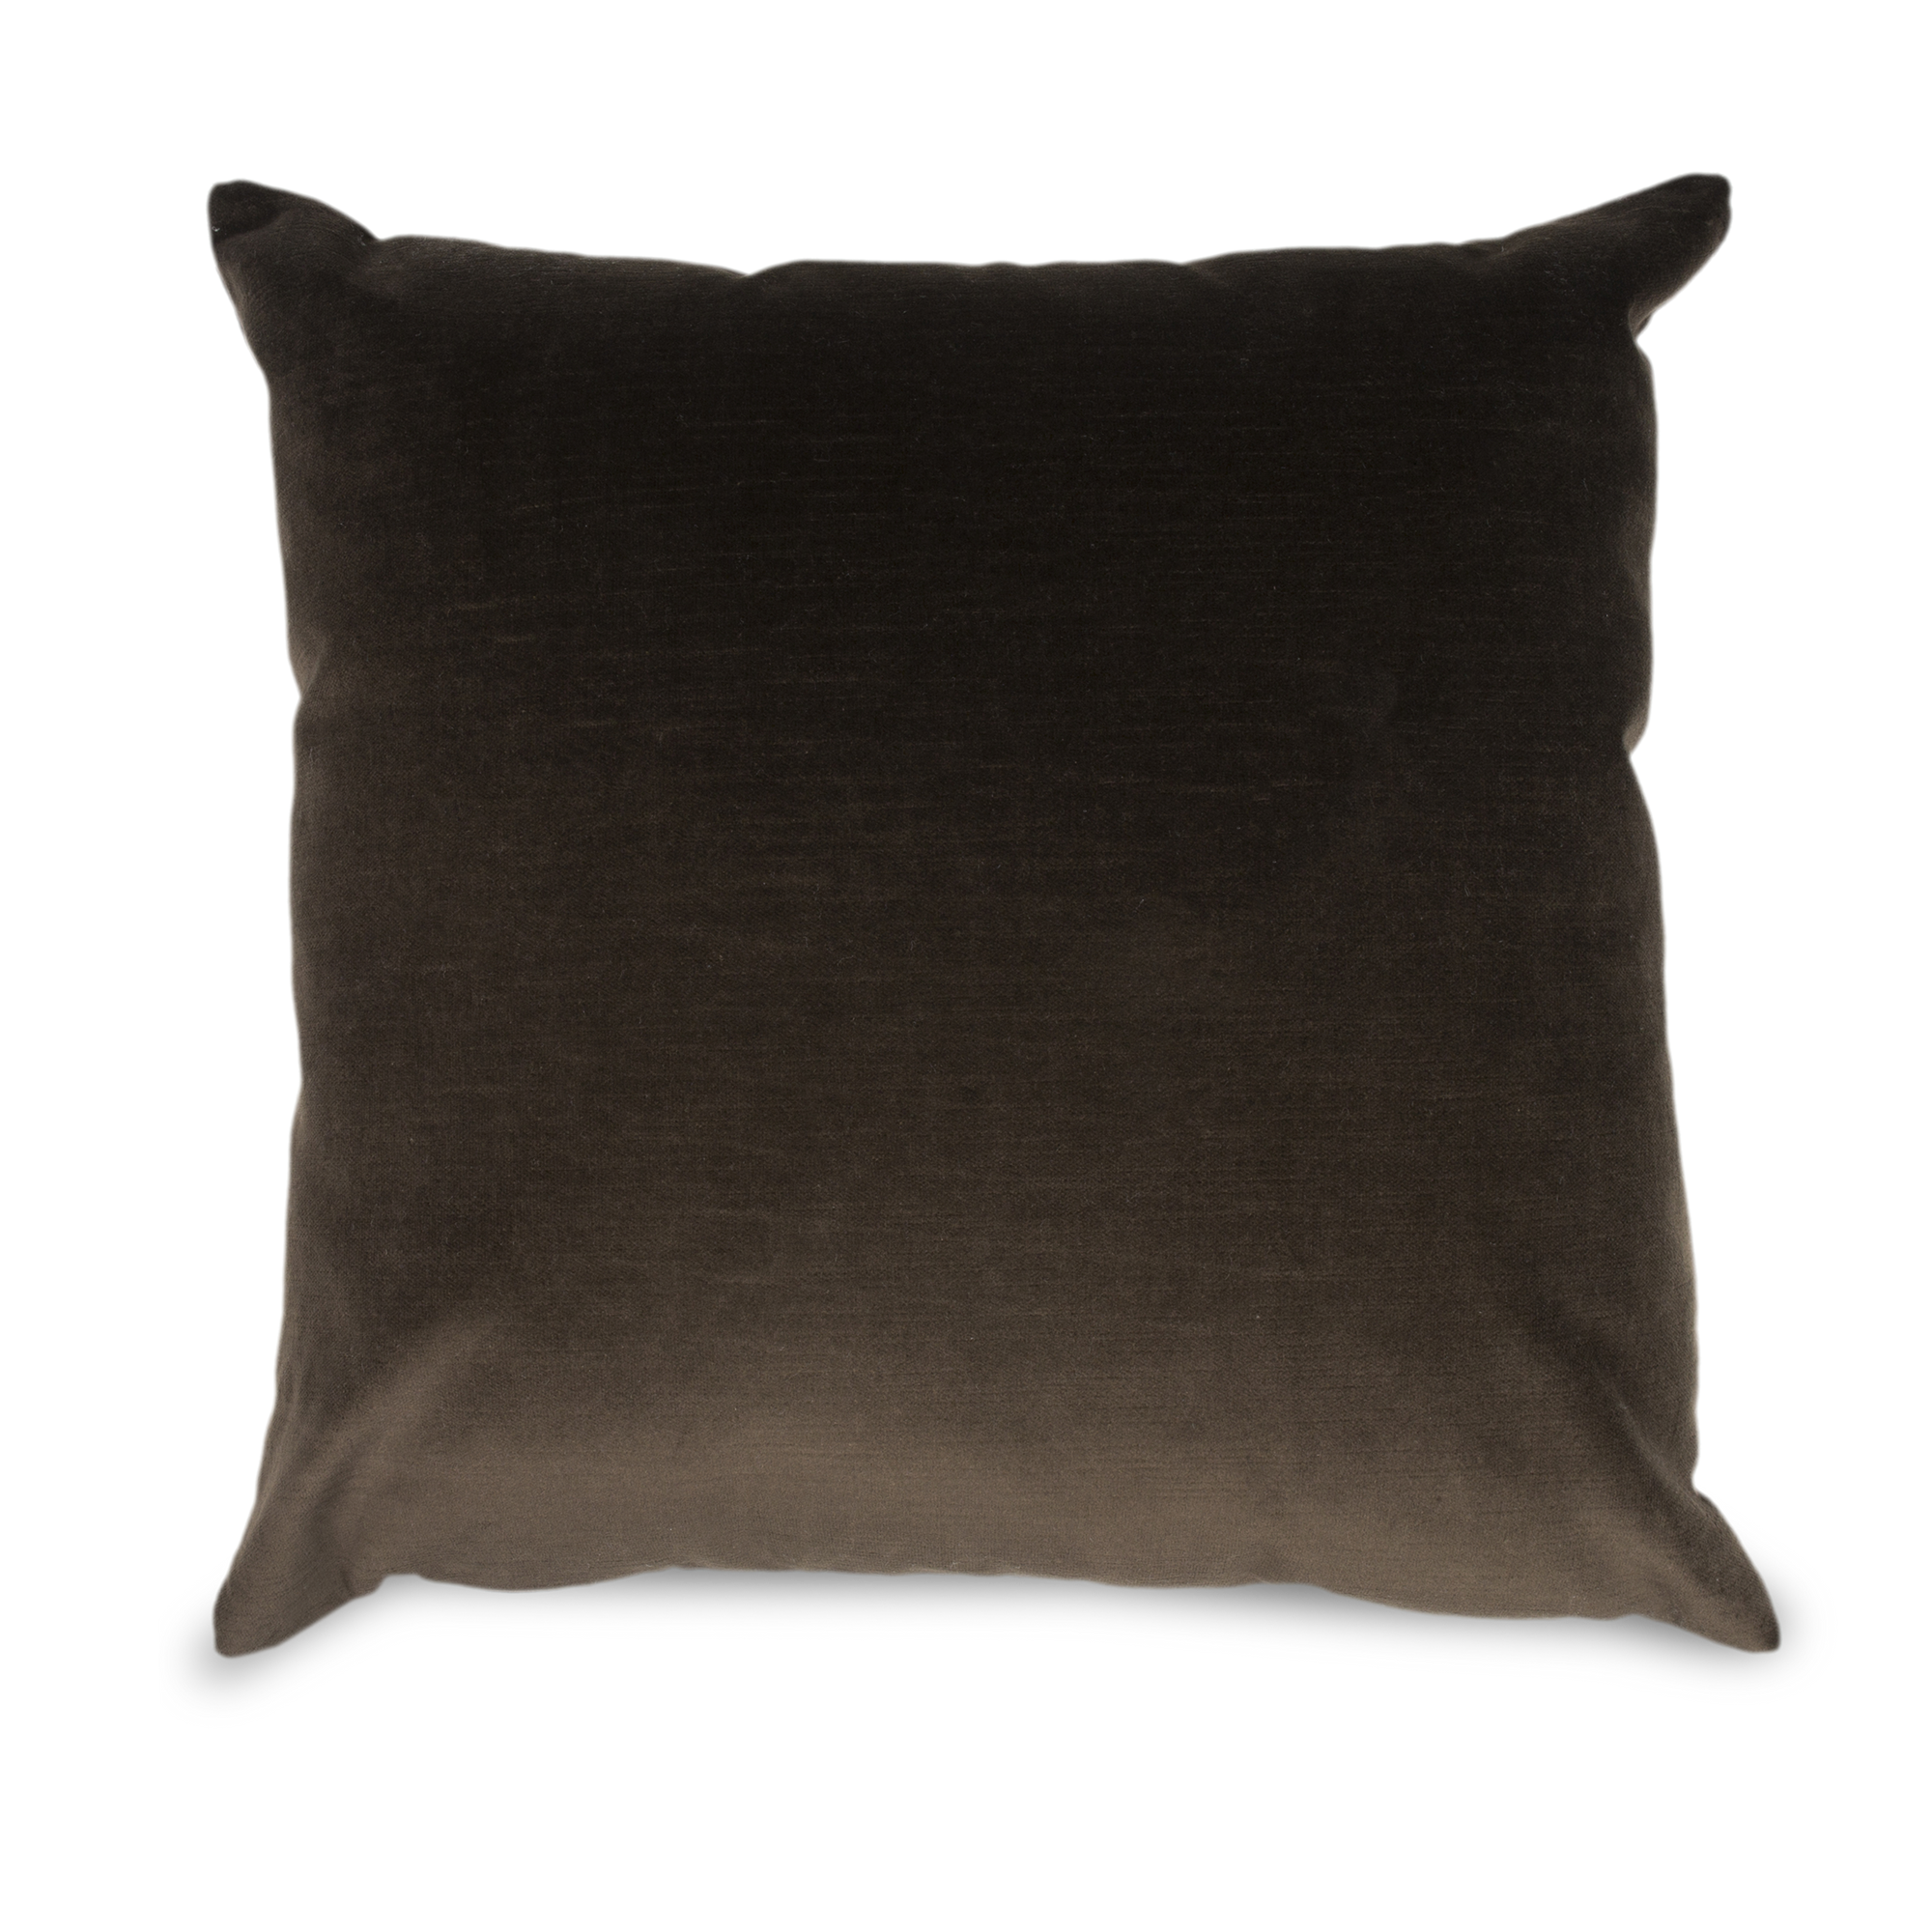 An elegant cotton velvet pillow with gentle striation that creates subtle dimensions.